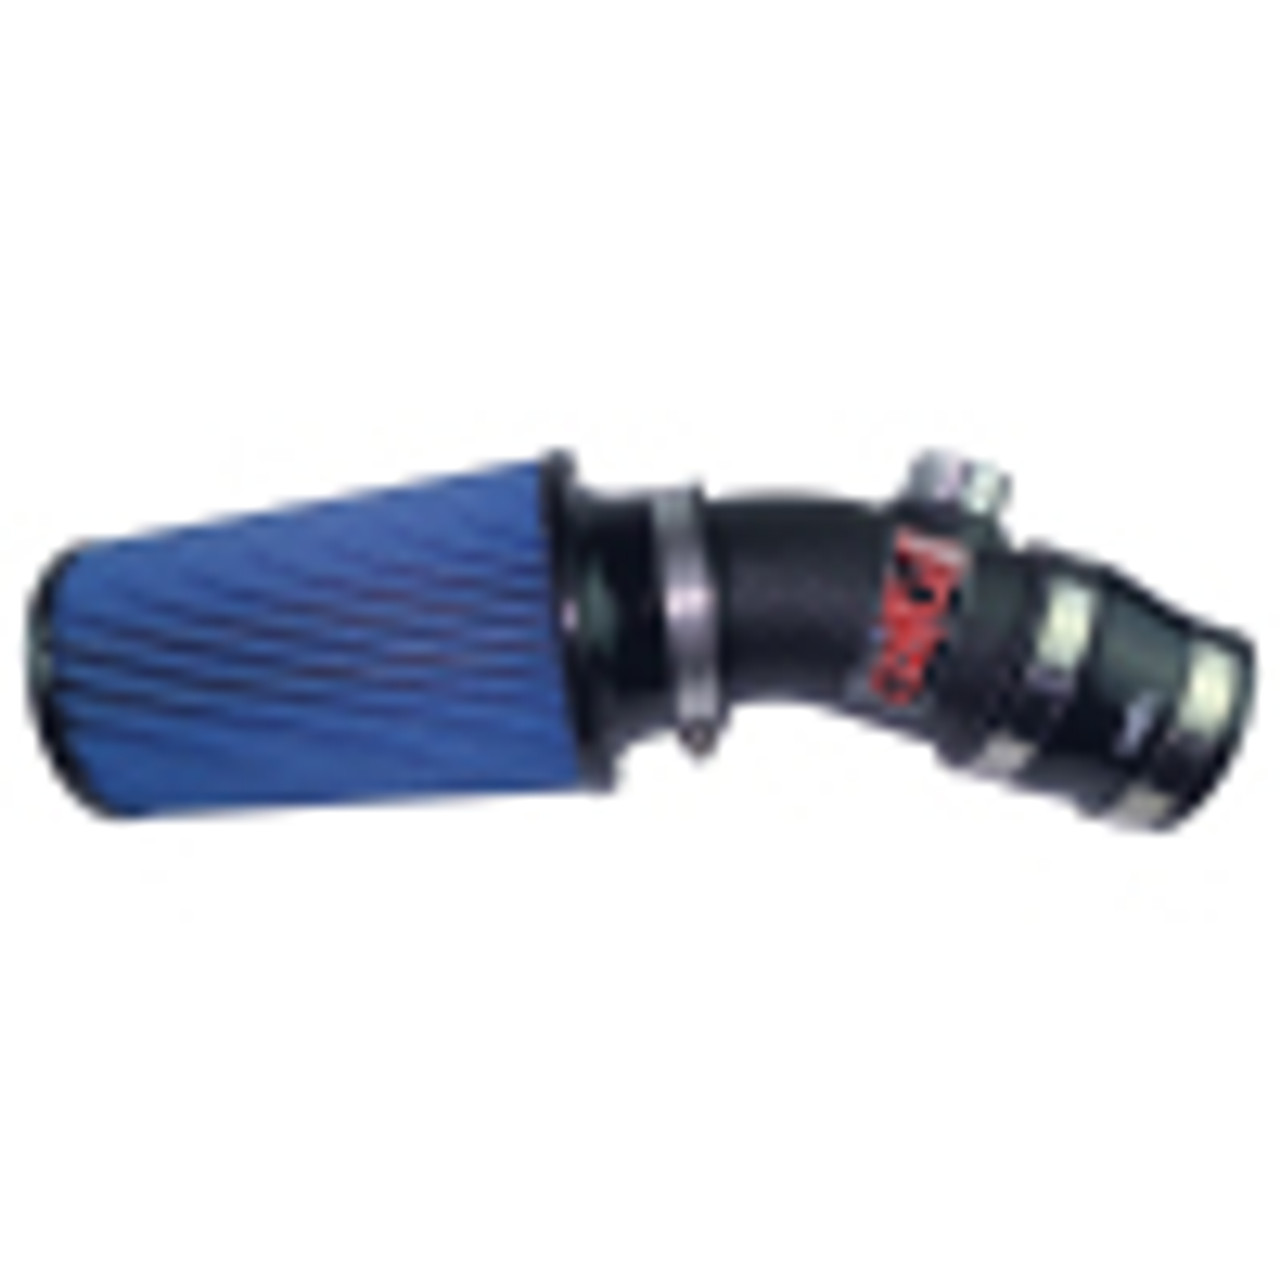 Short Ram Air Intake System
Intake Color: Wrinkle Black.  Filter Color: Blue